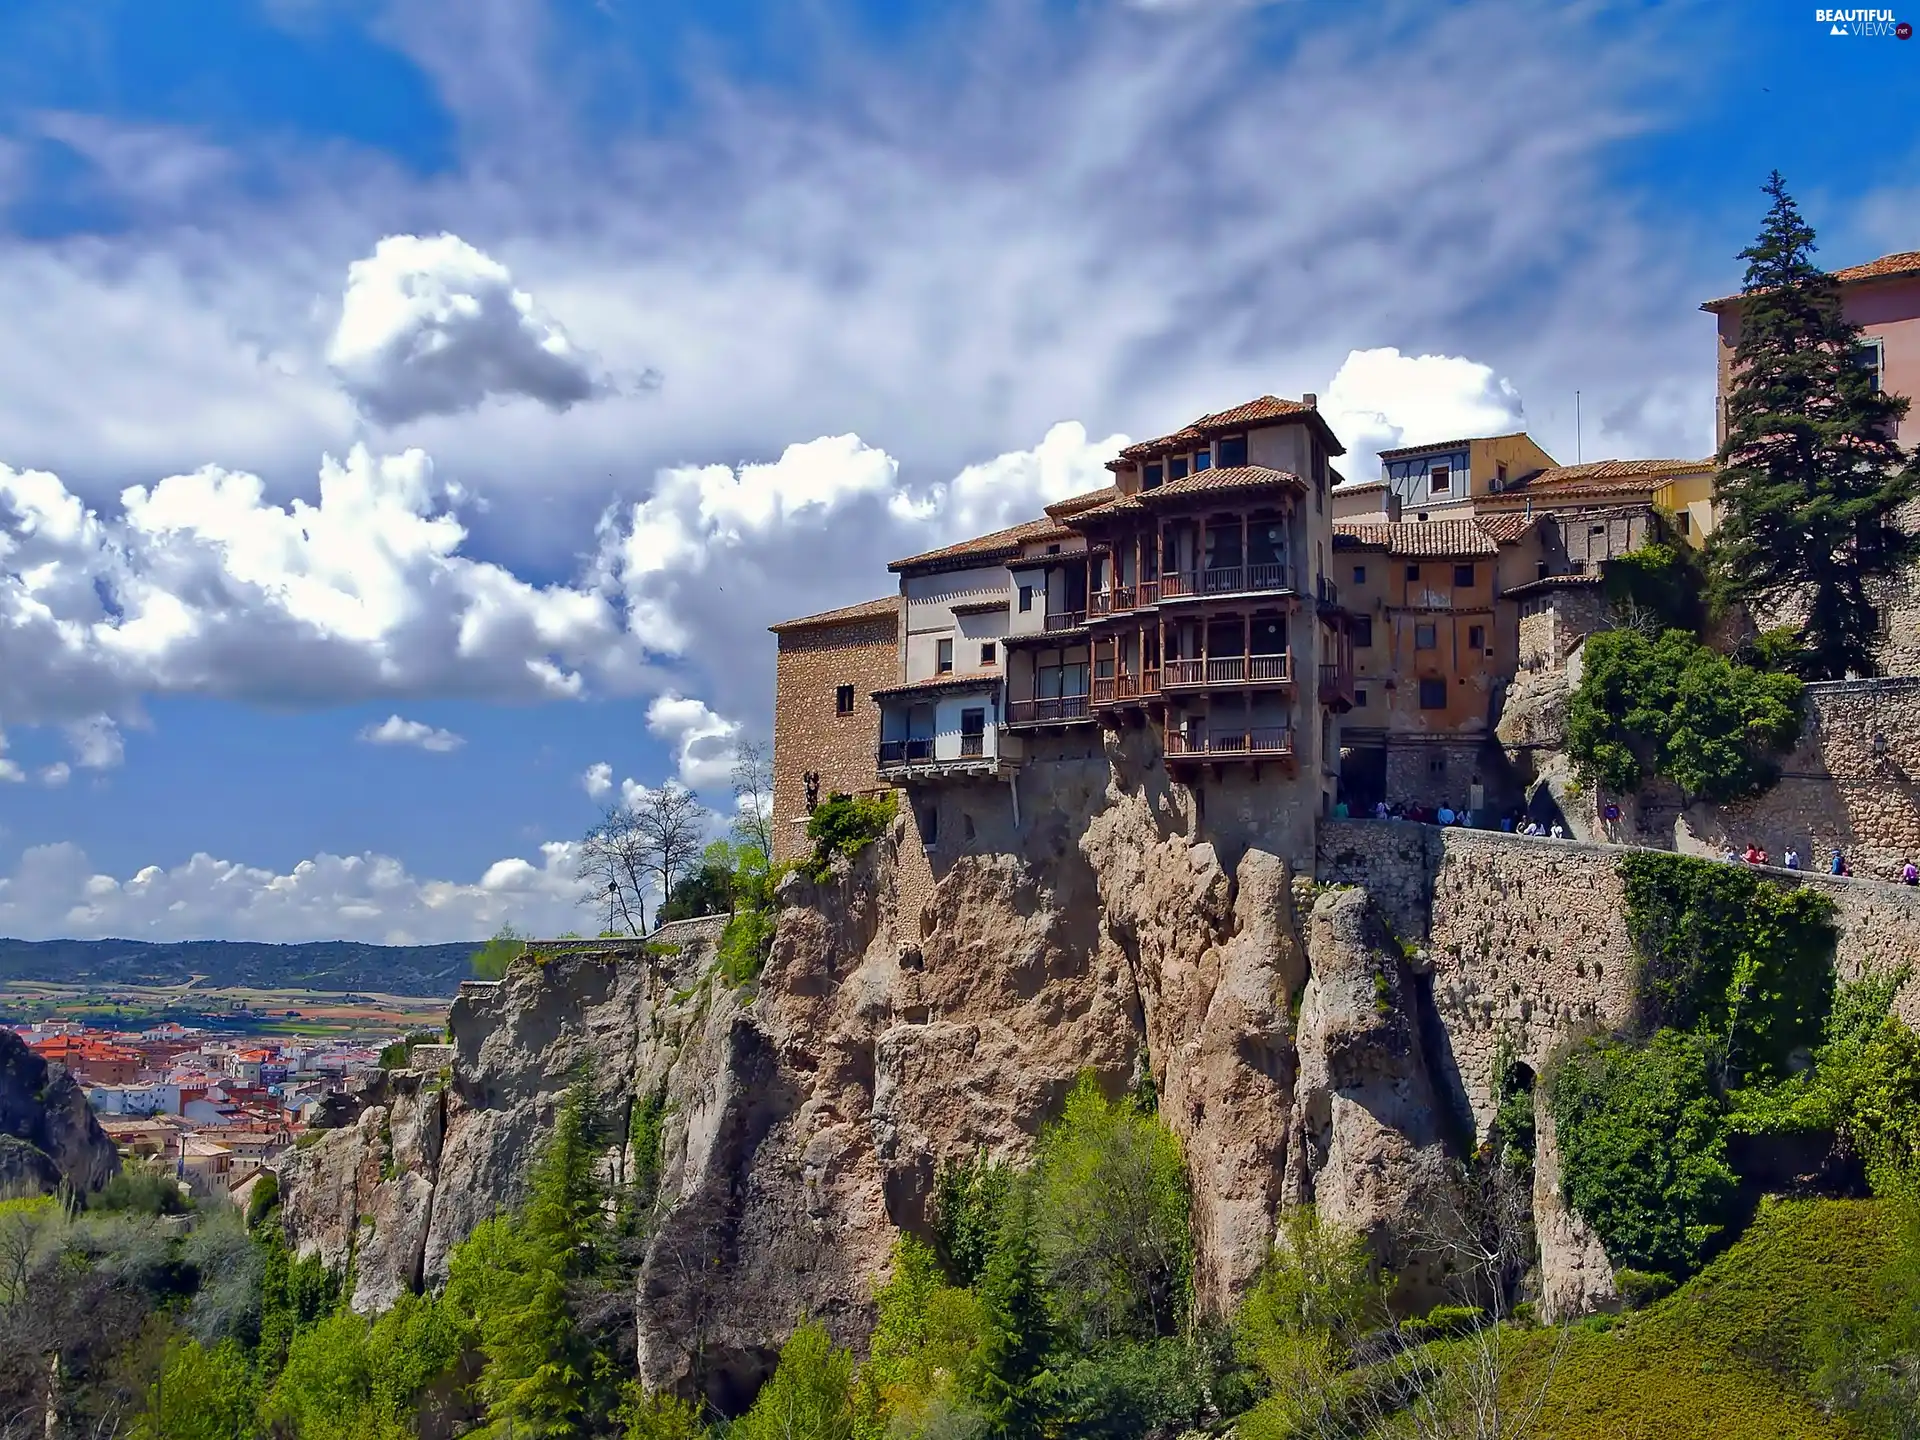 clouds, Cuenca, rocks, VEGETATION, Houses